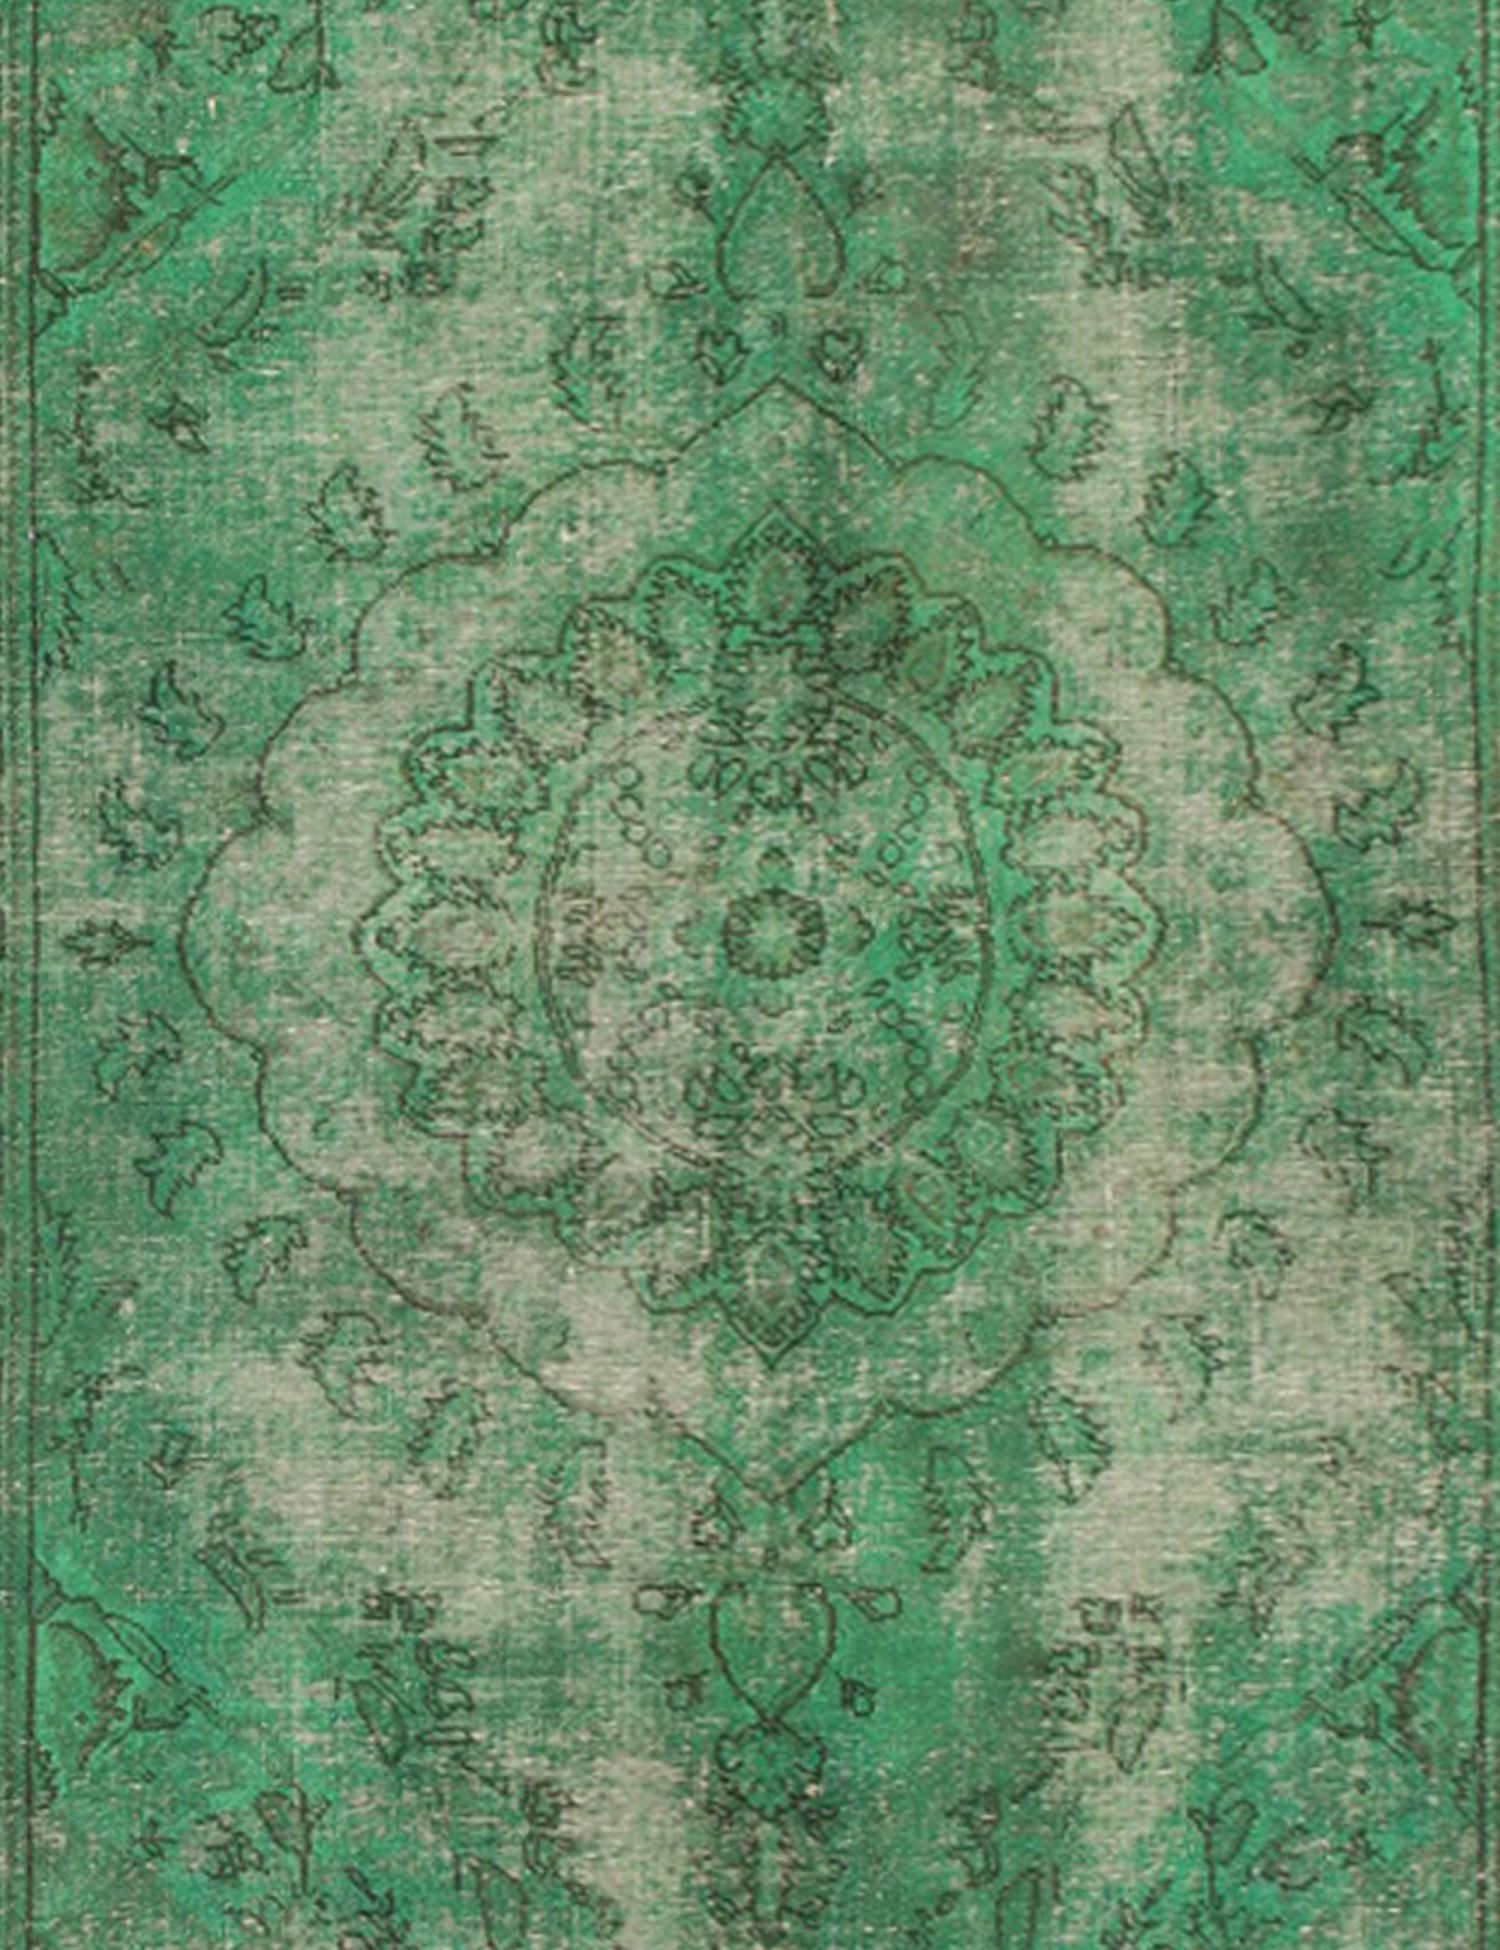 Persischer Vintage Teppich  grün <br/>220 x 195 cm